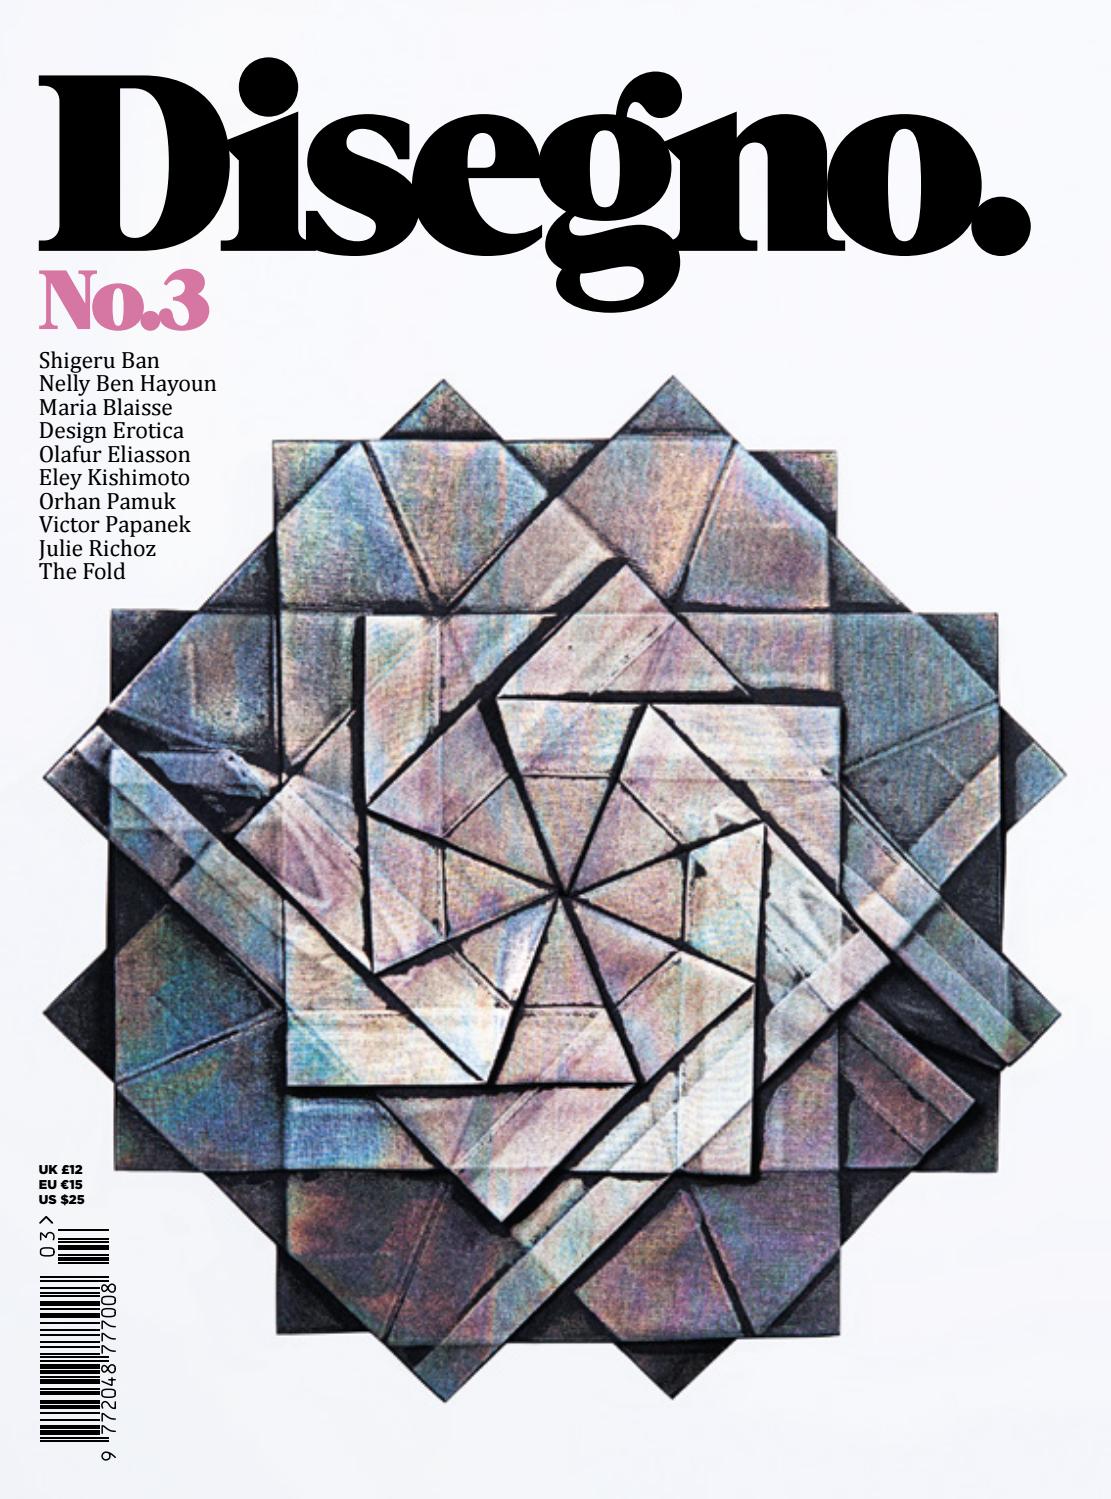 Disegno graphic design magazine cover